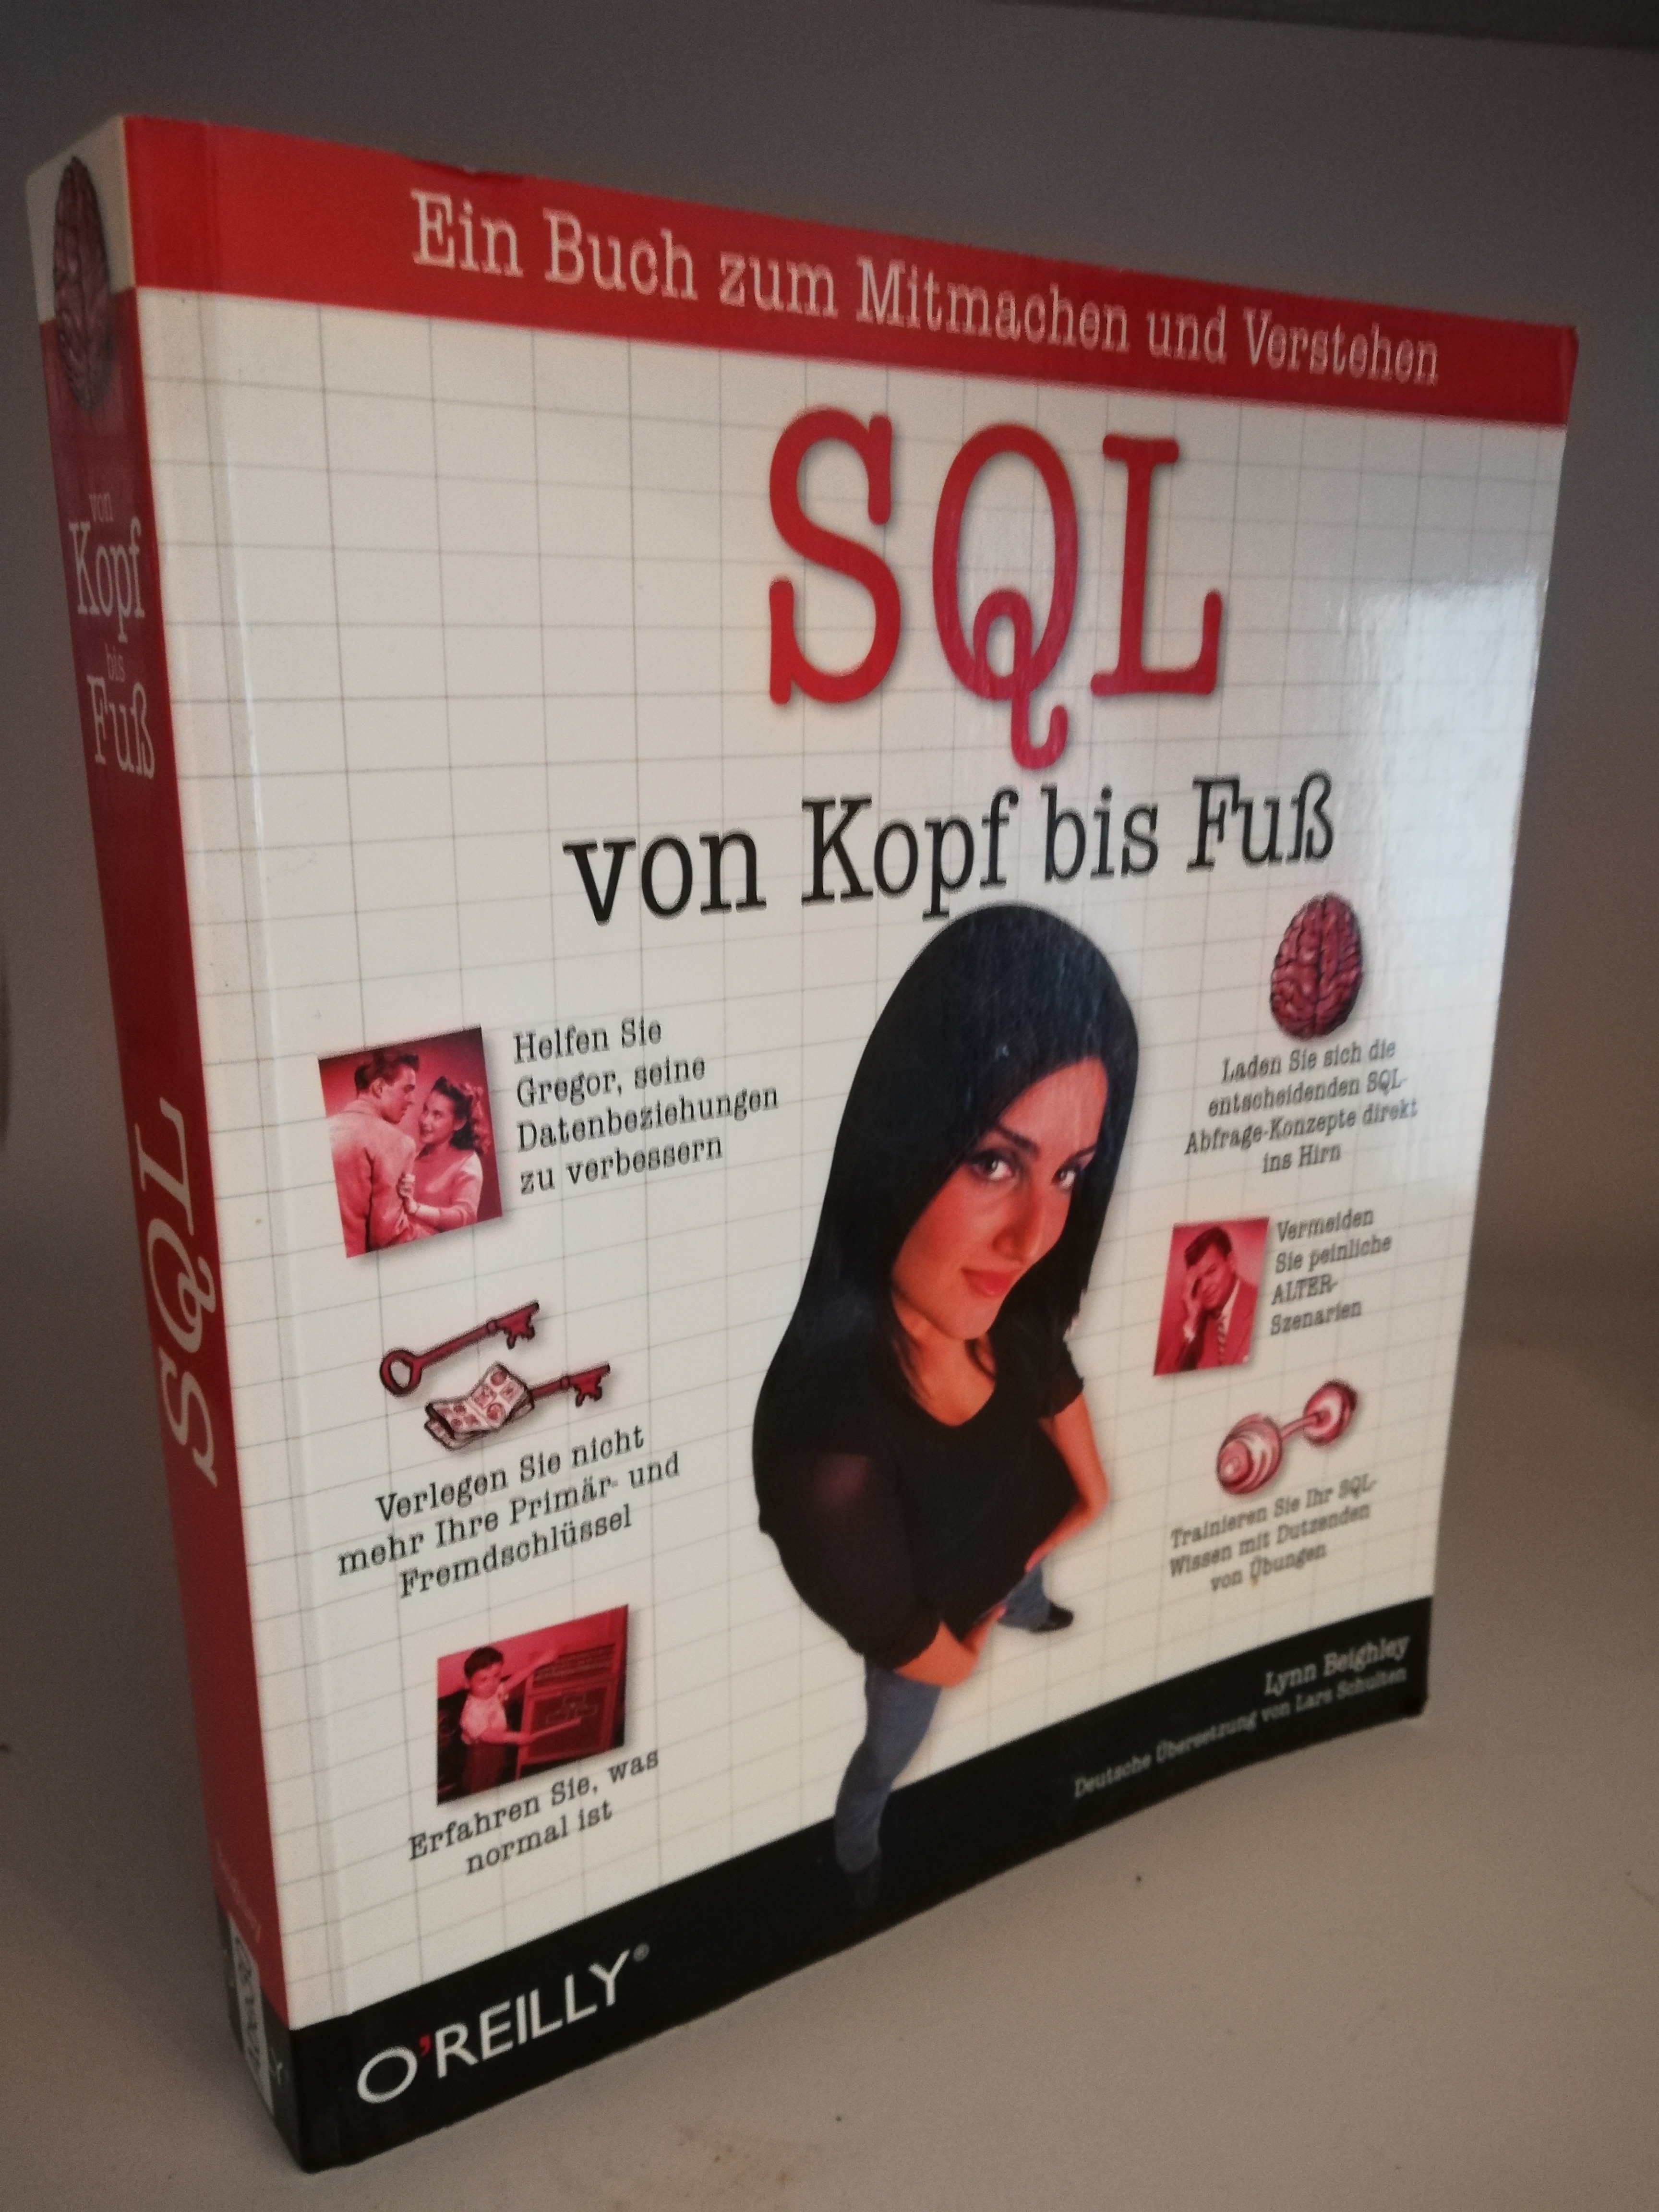 Lynn Beighley  SQL von Kopf bis Fuß. Deutsche Übersetzung von Lars Schulten. Ein Buch zum Mitmachen und Verstehen 